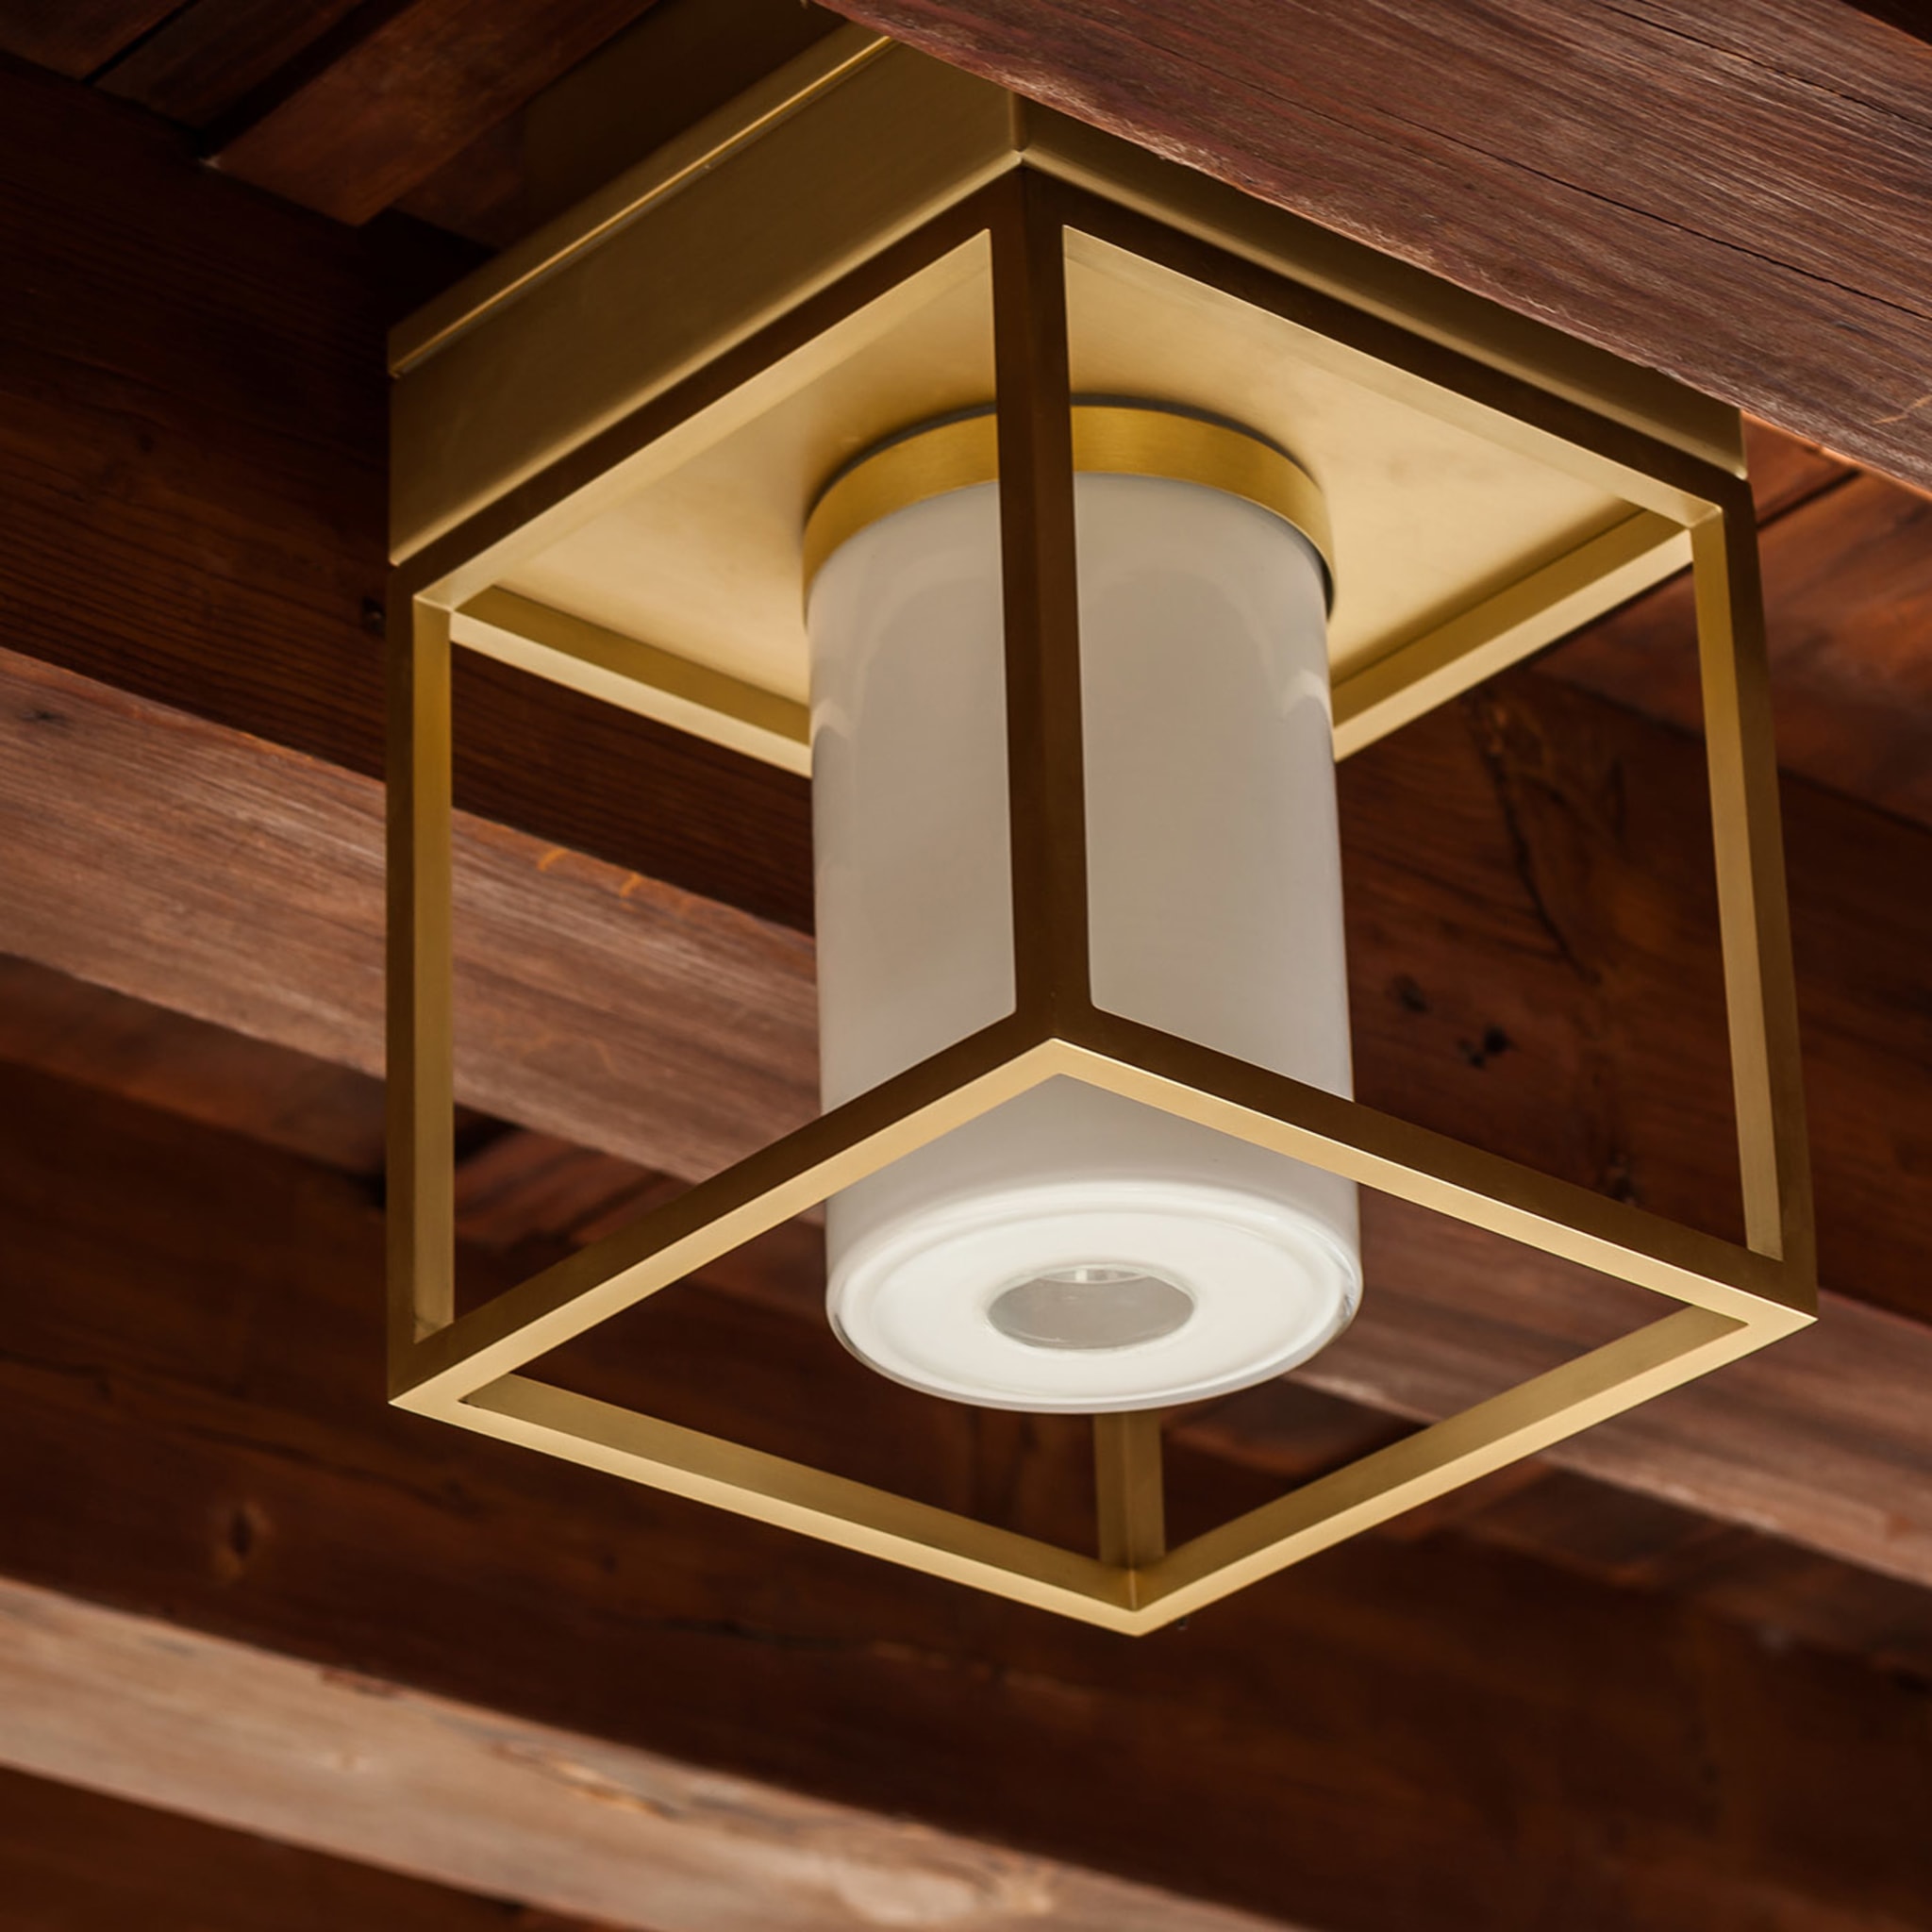 Noal Mini Ceiling Lamp design by Alberto Pasetti Bombardella - Alternative view 1